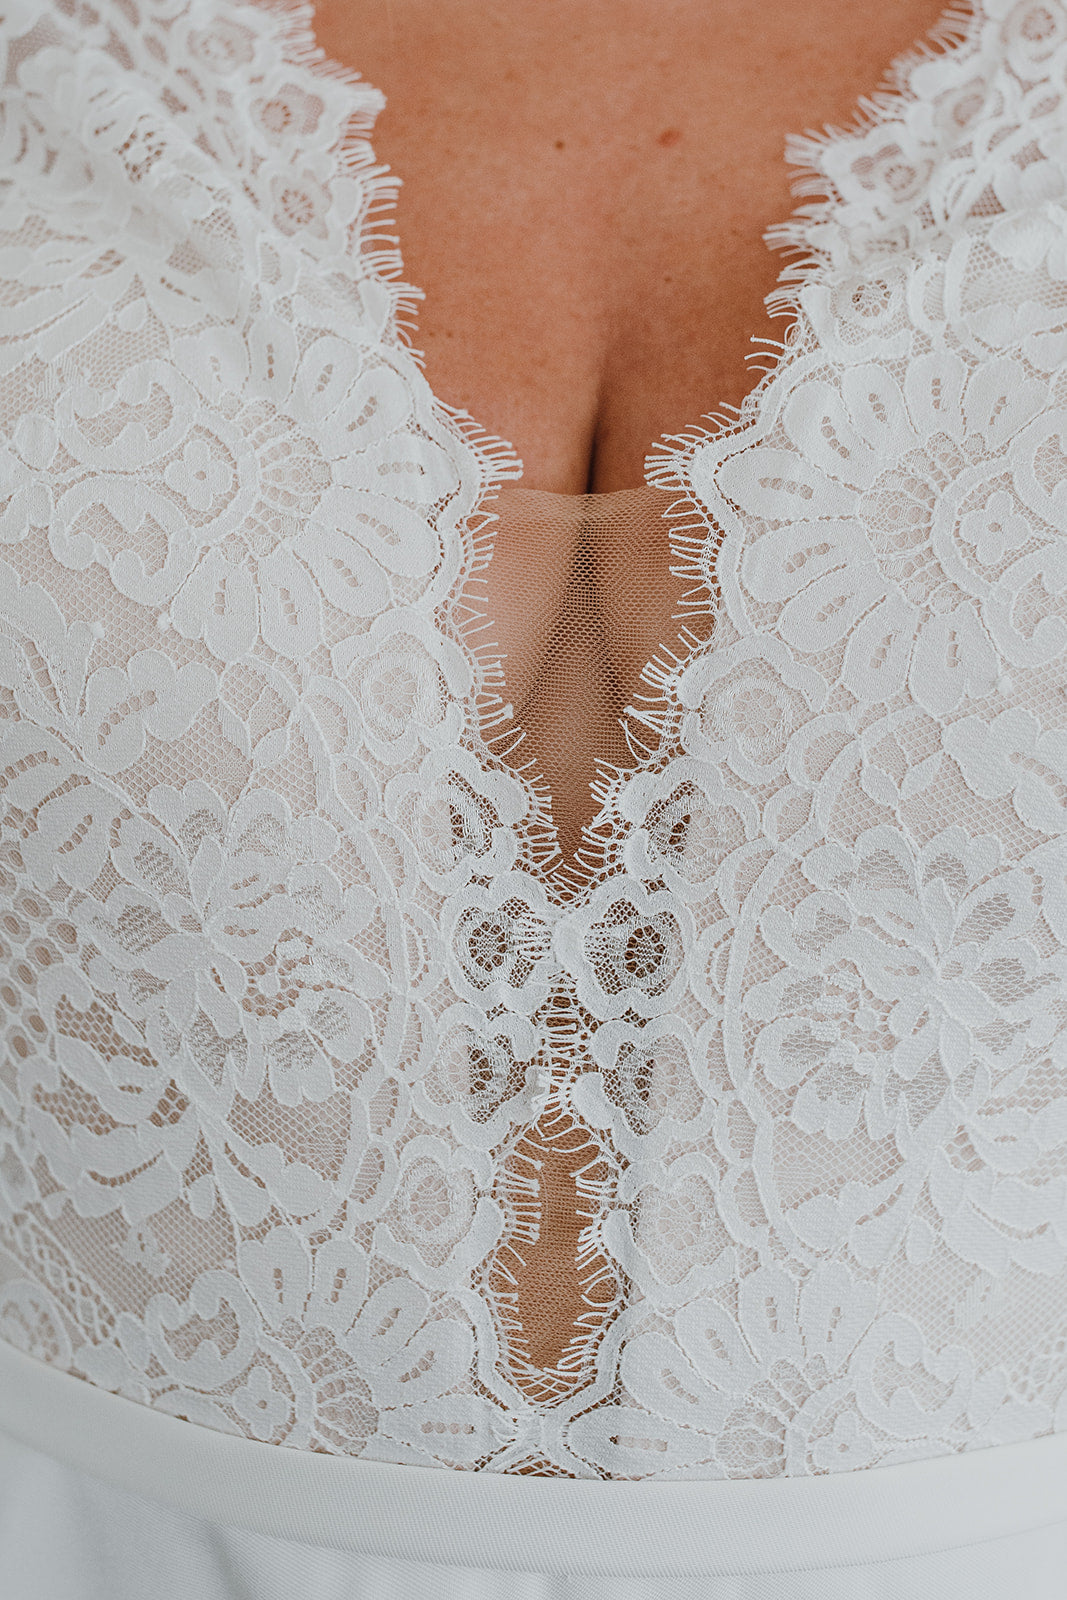 Carlyle *taillle plus* - robe de mariée classique à décolleté plongeant illusion en dentelle et manches longues